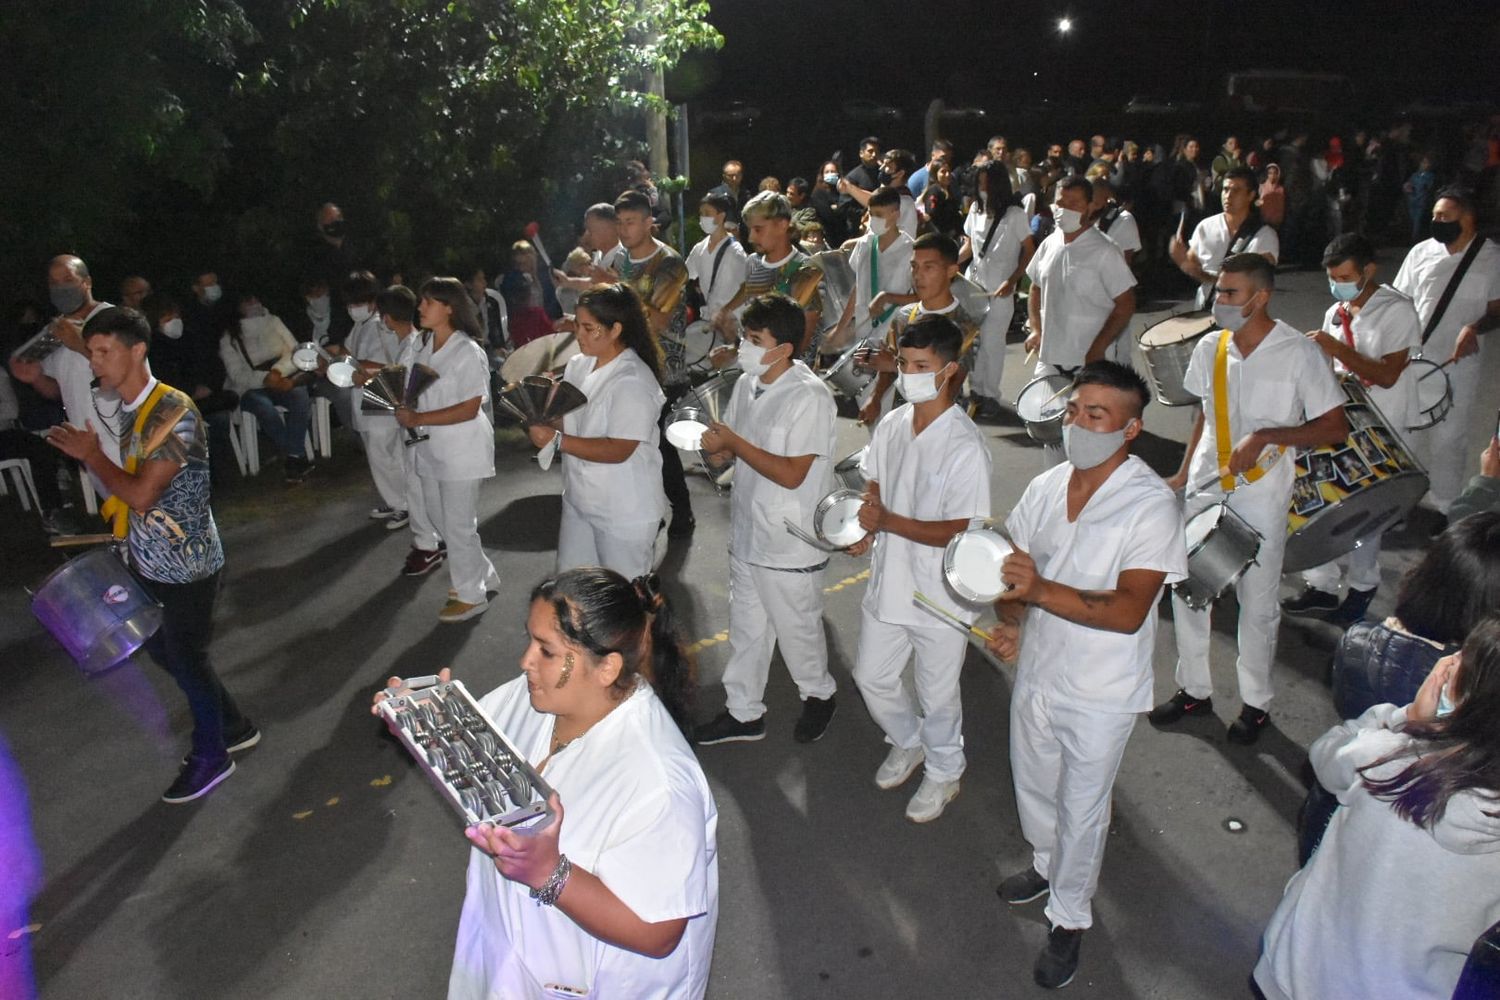 Volvió el carnaval a Chivilcoy: Una comparsa homenajeó al personal de salud por su lucha en la pandemia